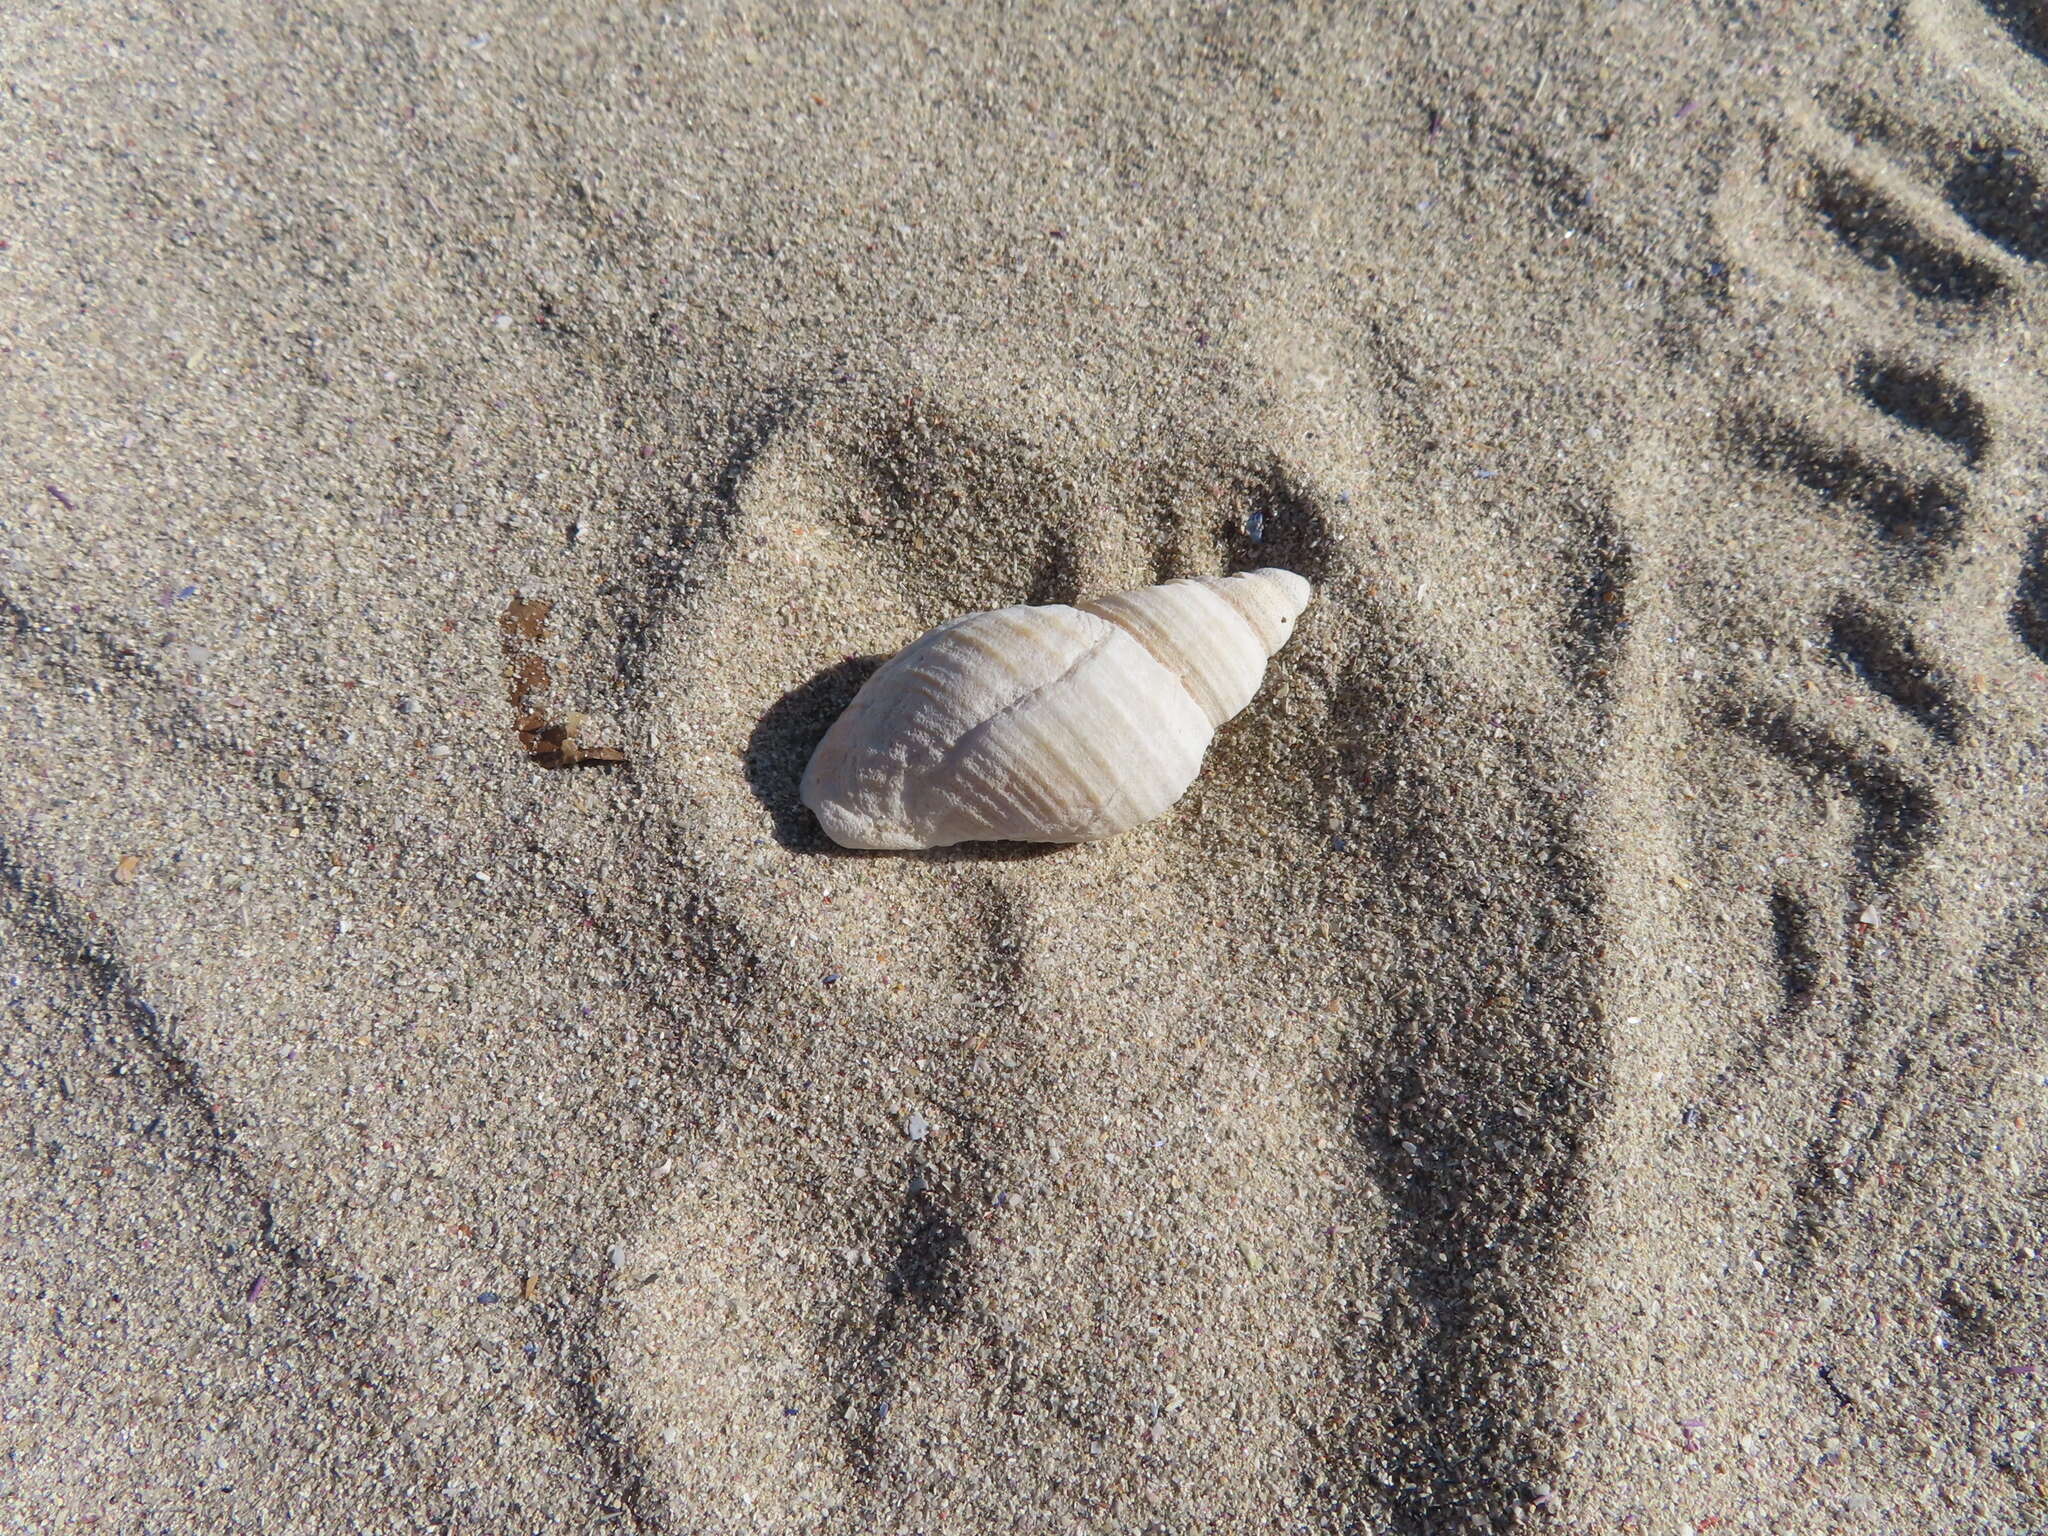 Image of scaly dogwhelk